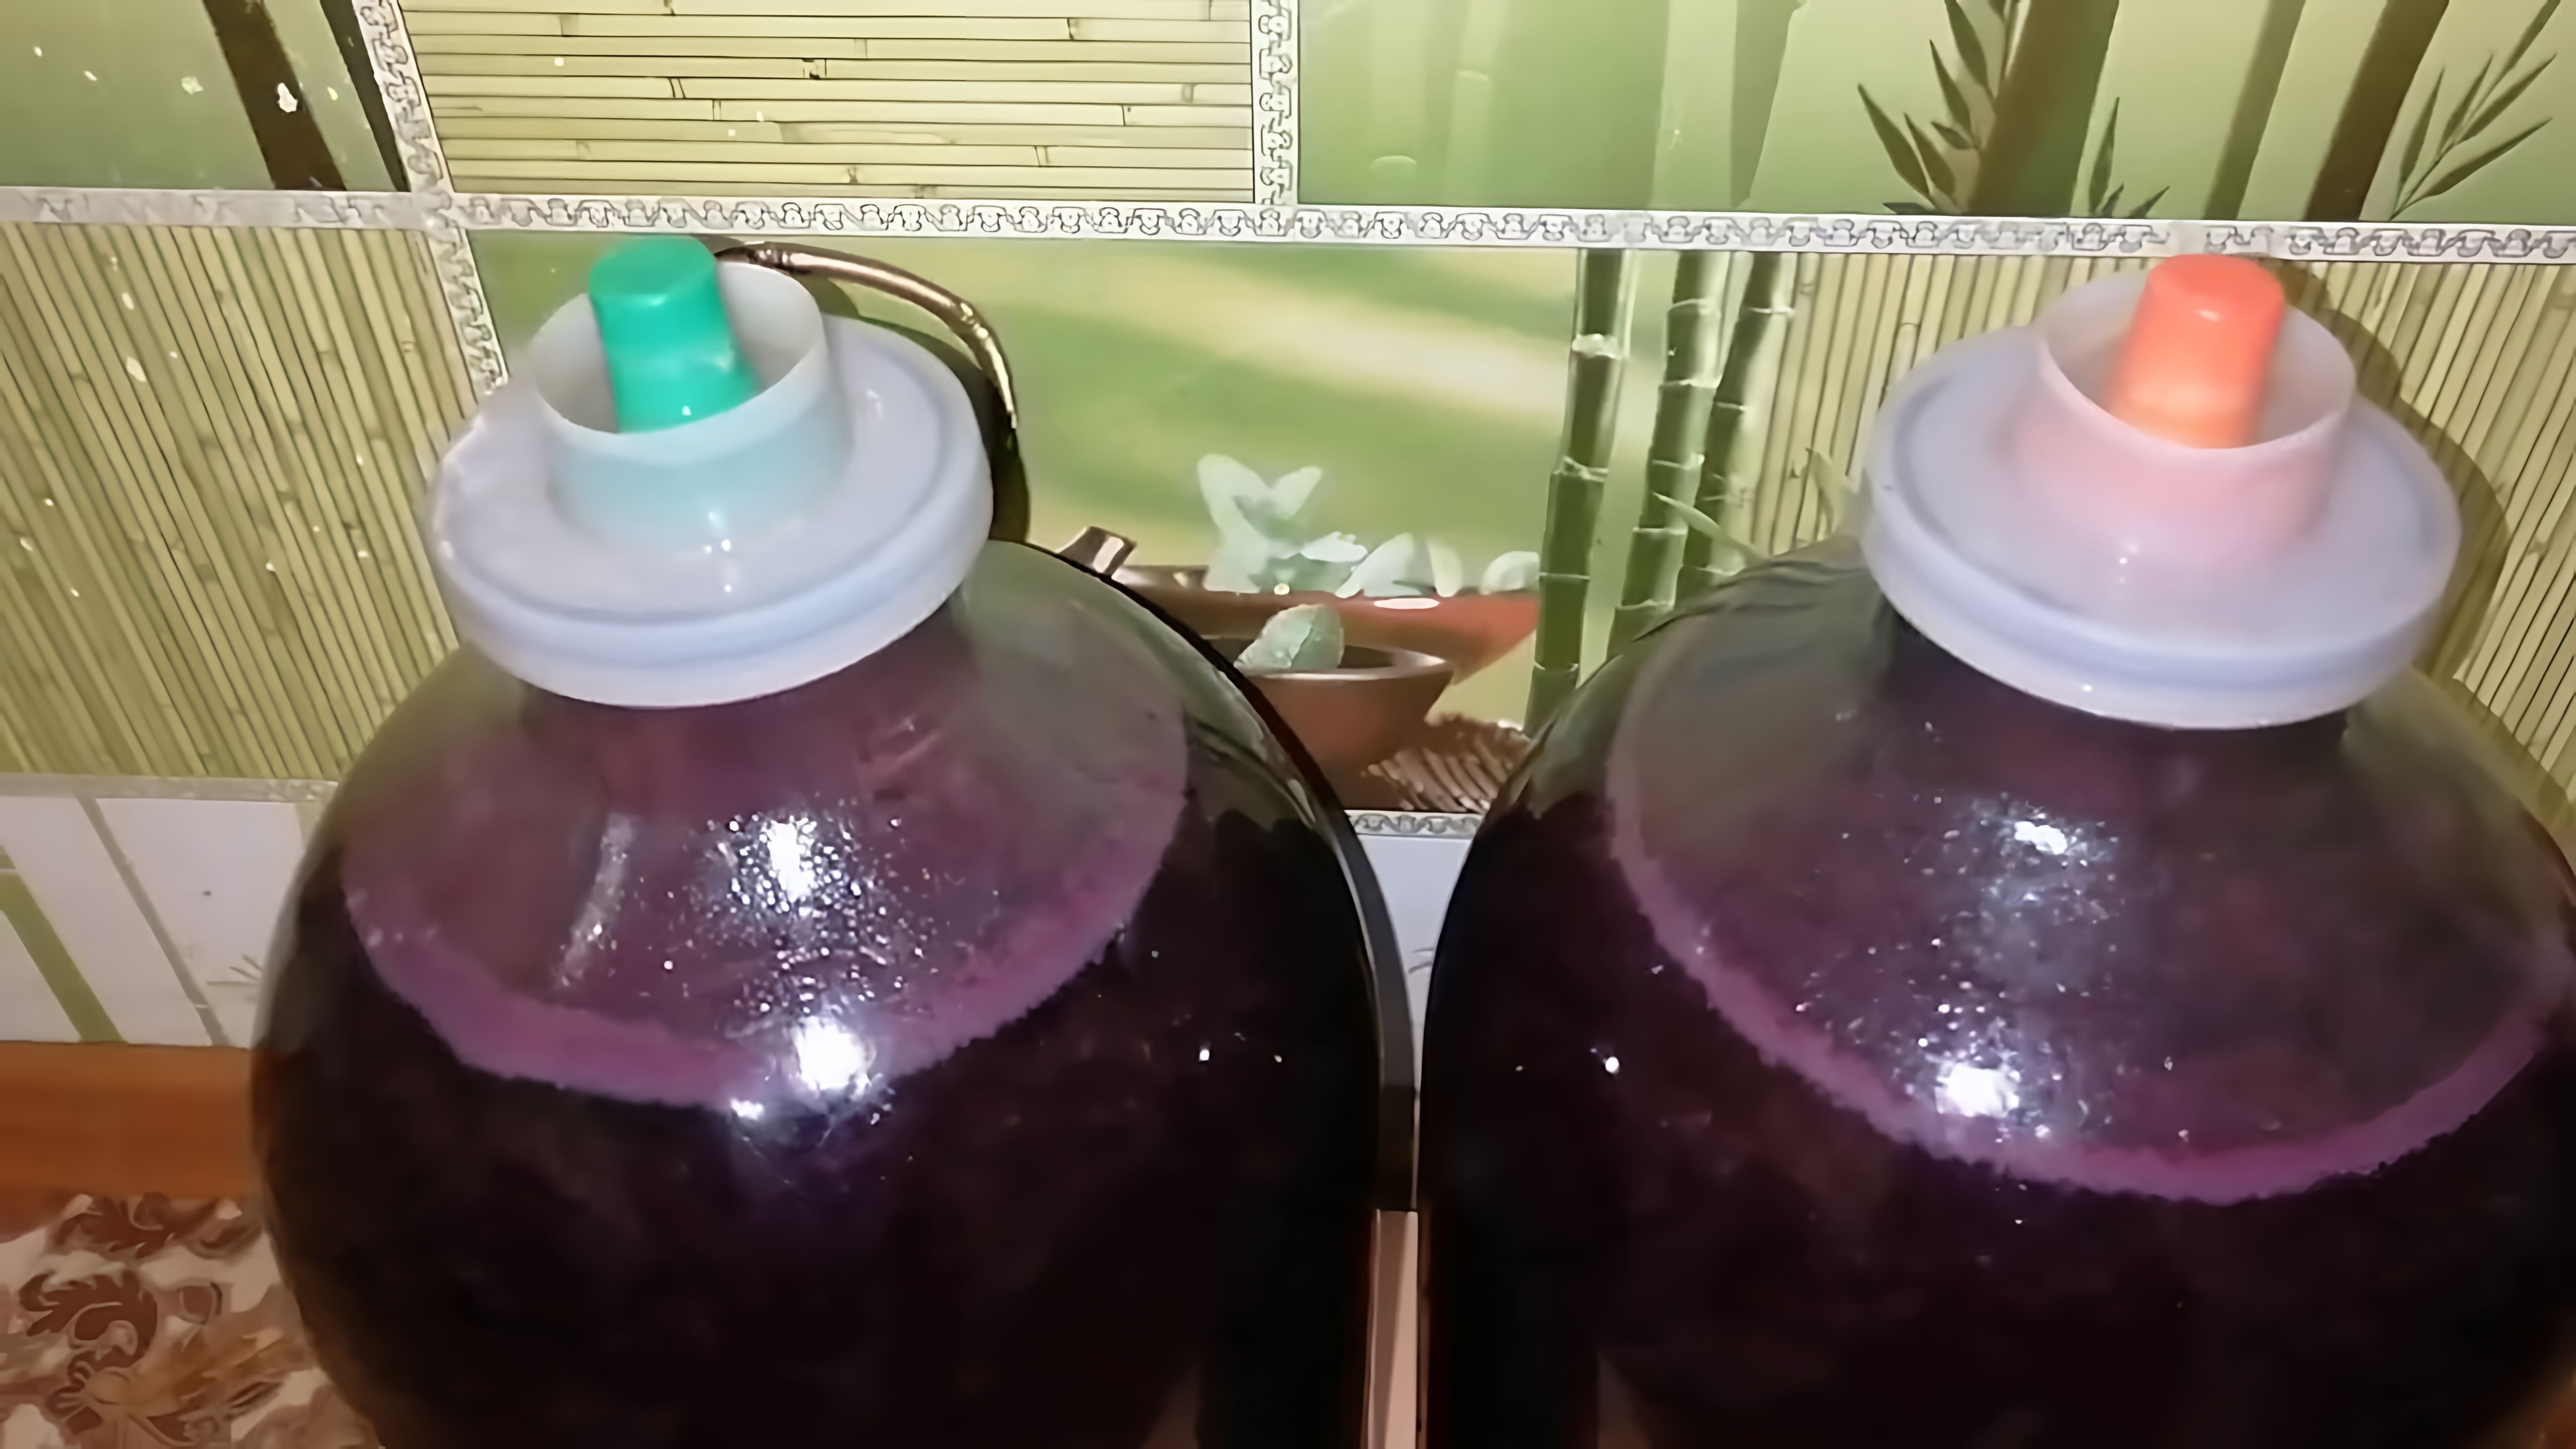 В этом видео демонстрируется процесс изготовления виноградного вина с использованием диких дрожжей